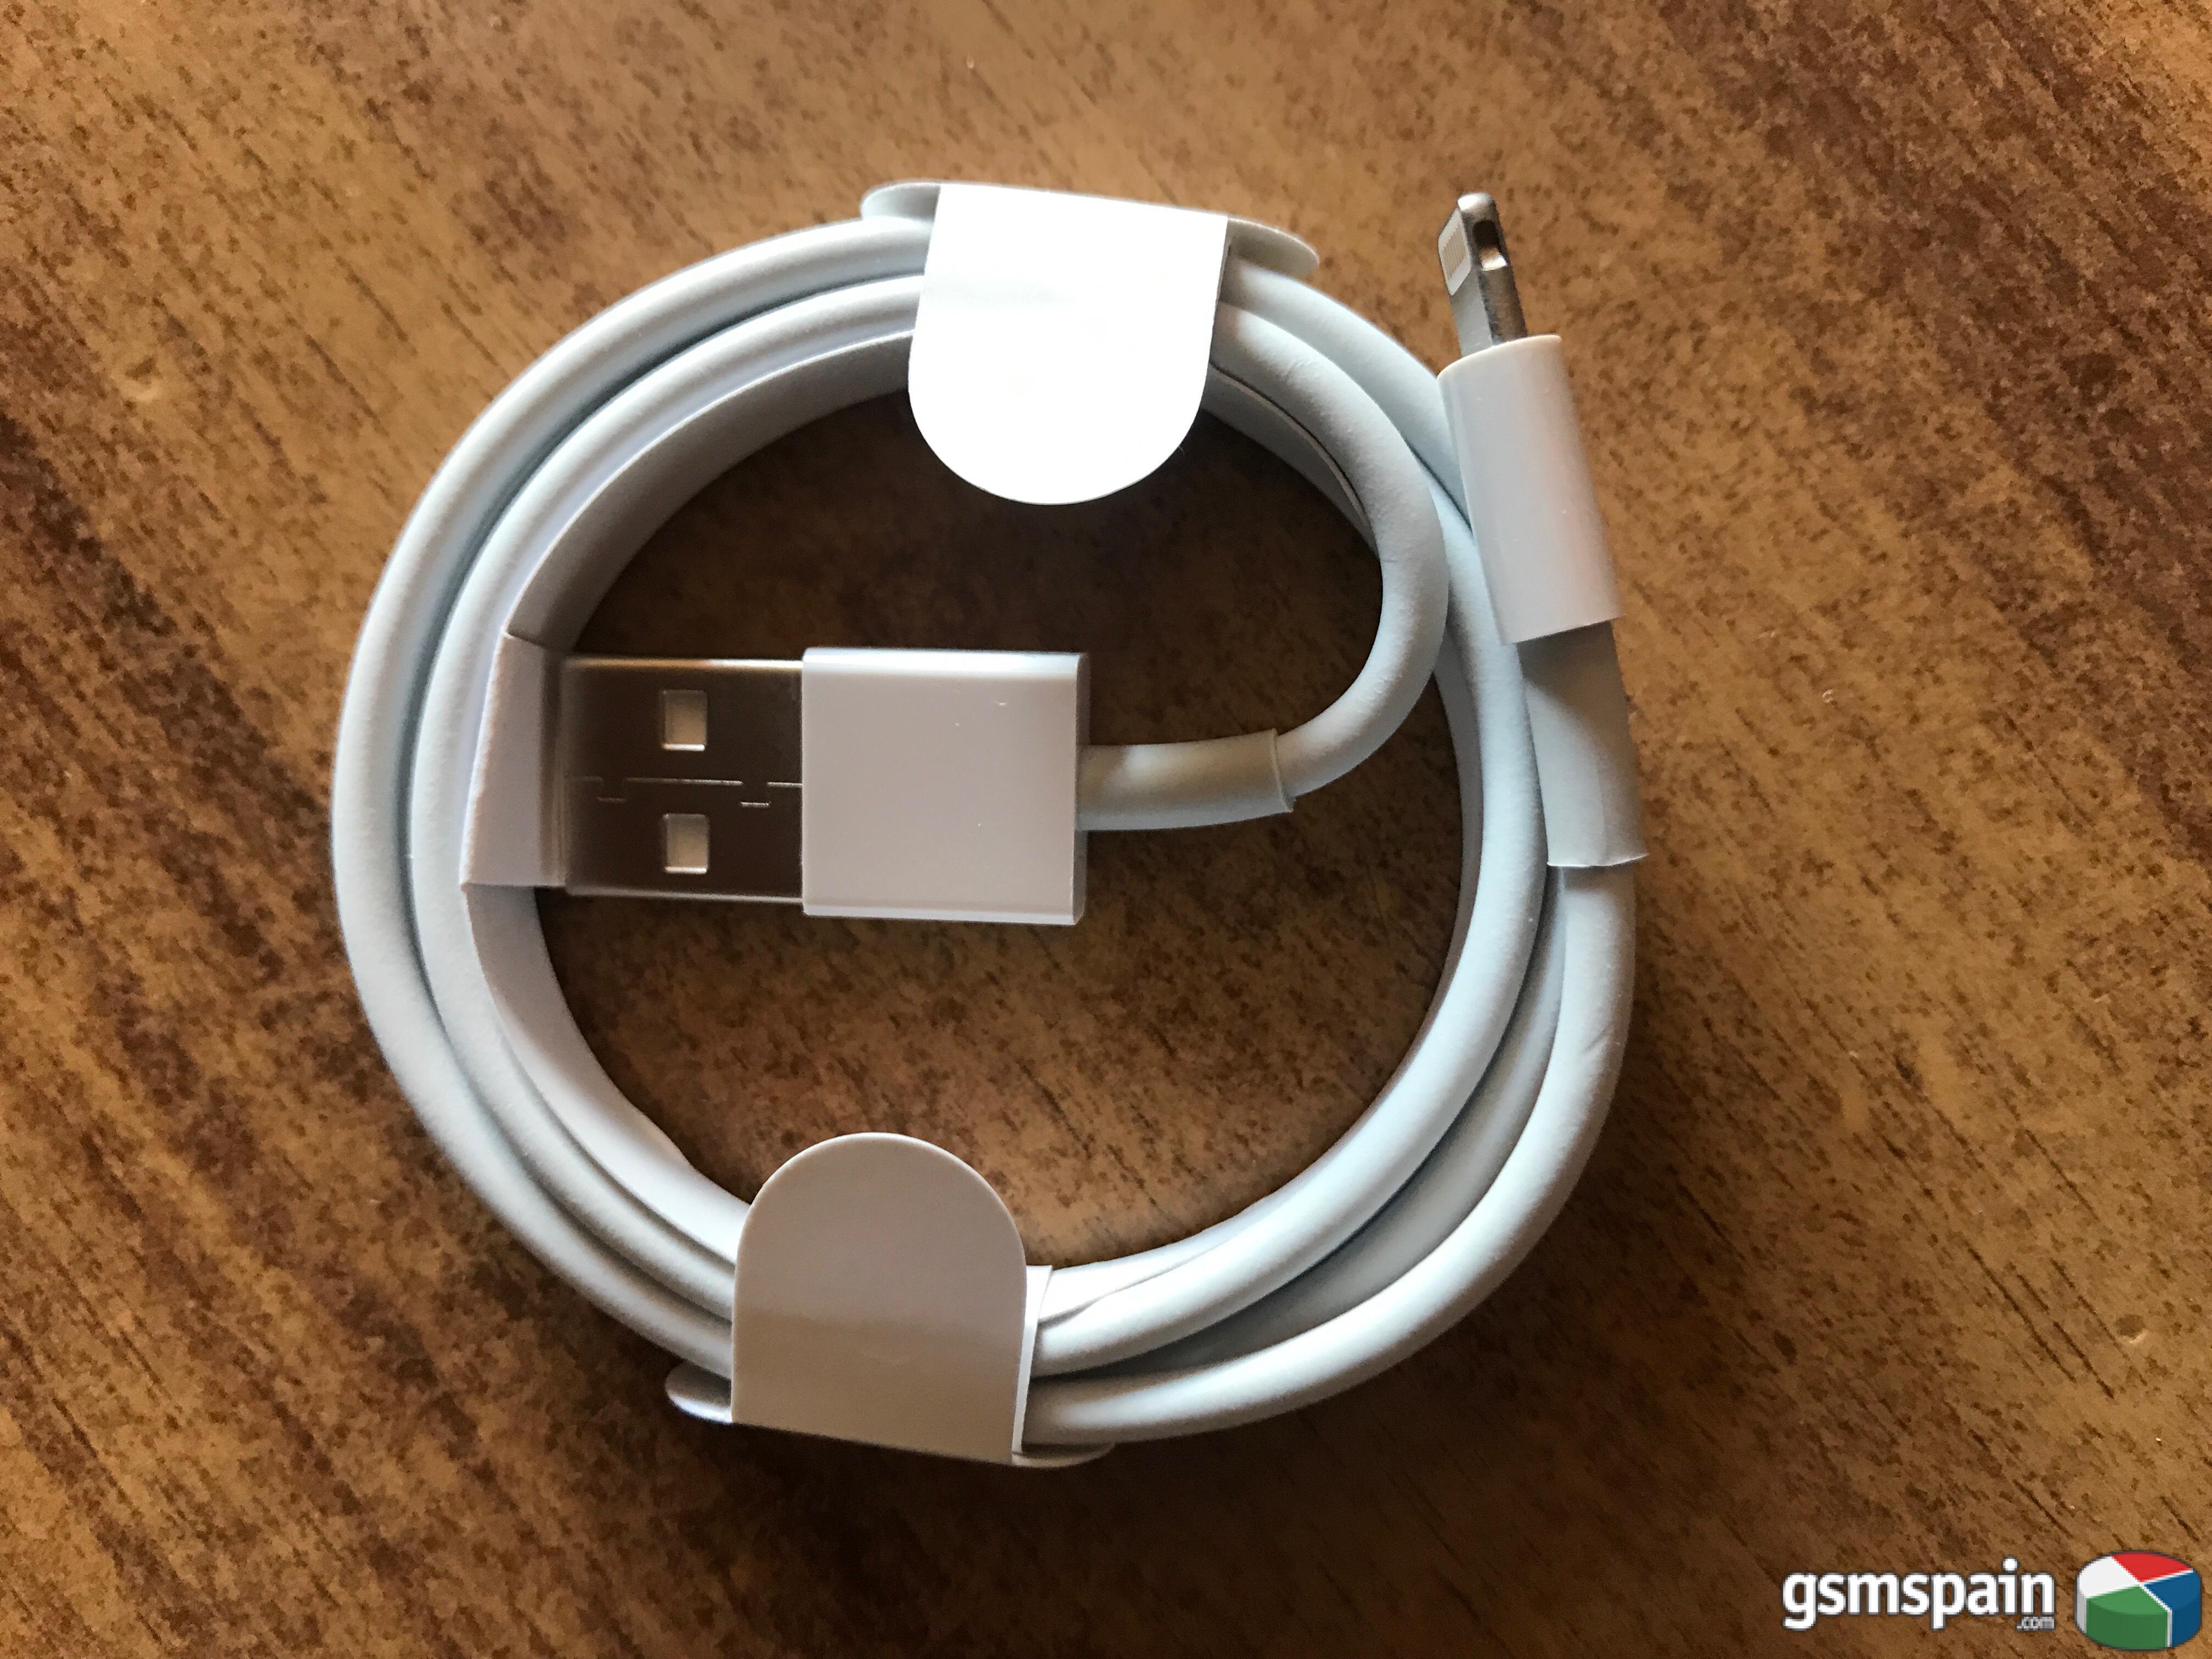 [VENDO] Cable USB Datos Original Apple iPhone 7, 7 Plus, 8, 8 Plus, X, iPad, iPod. 4,00 g.i.